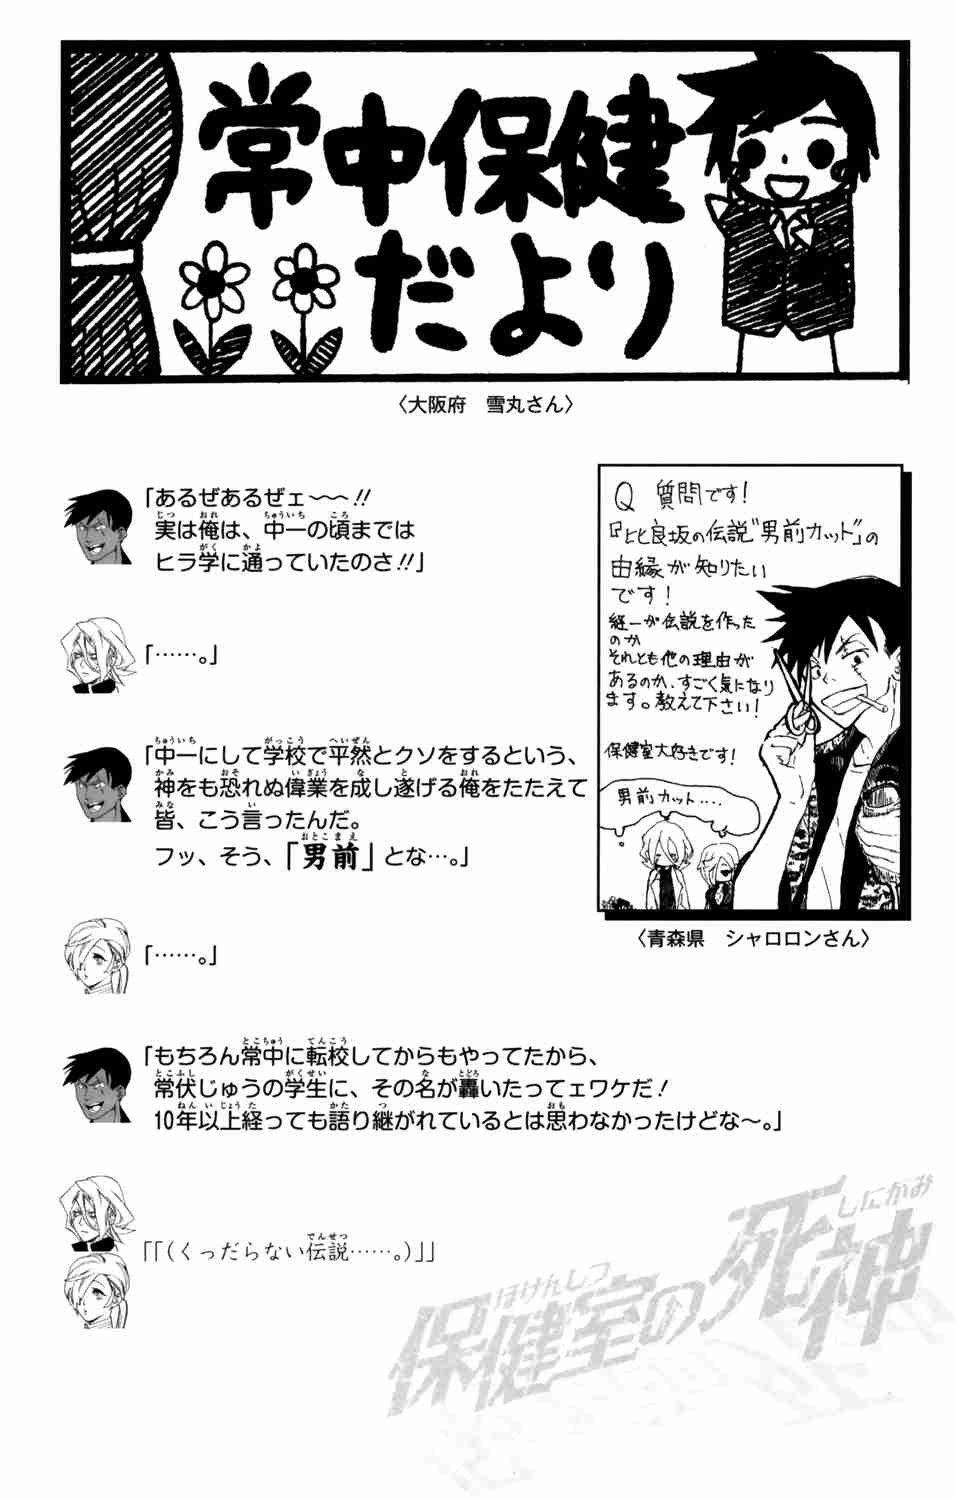 Hokenshitsu no Shinigami Vol. 9 Ch. 77 Reminiscence